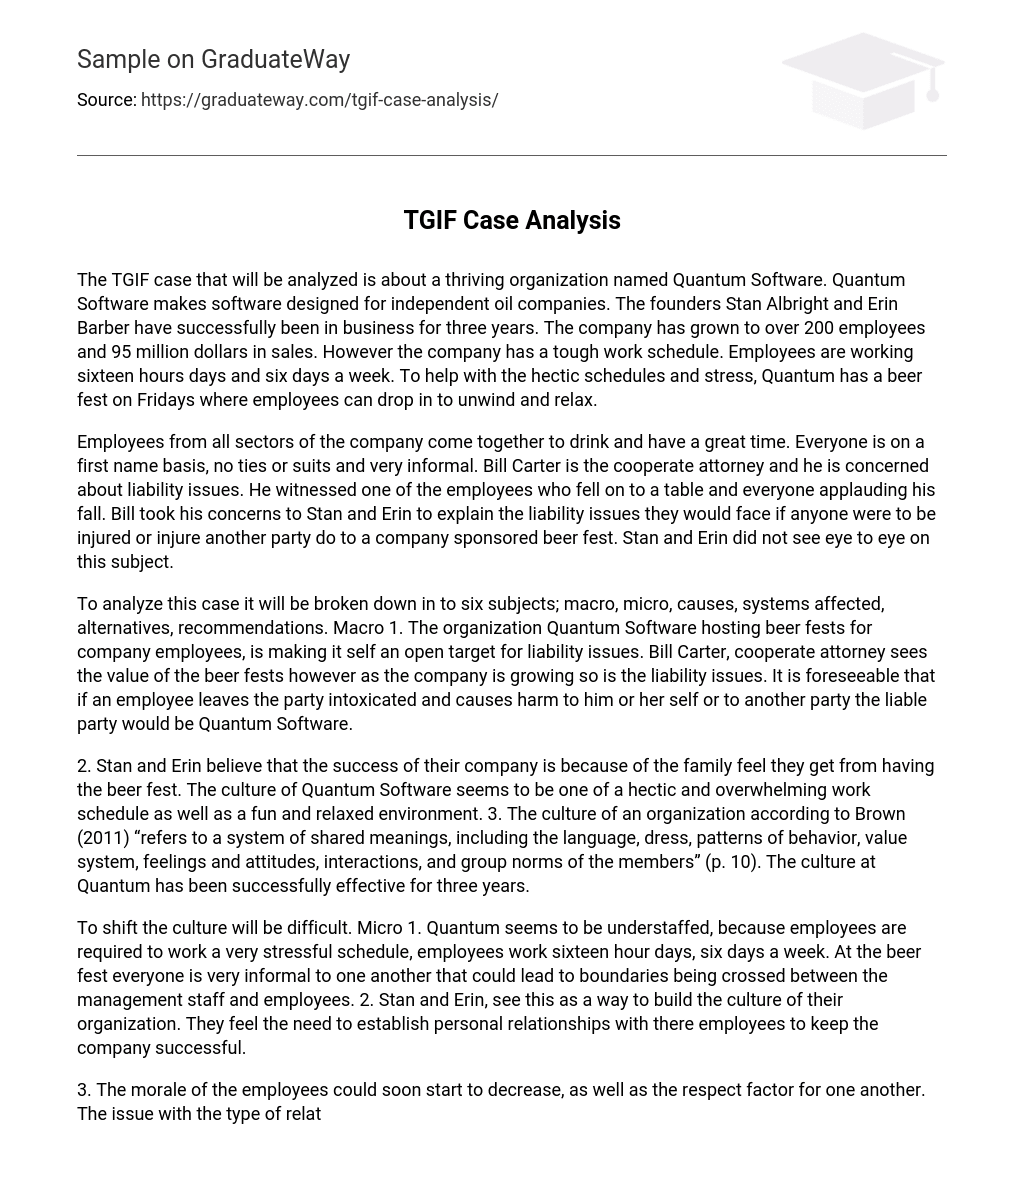 TGIF Case Analysis